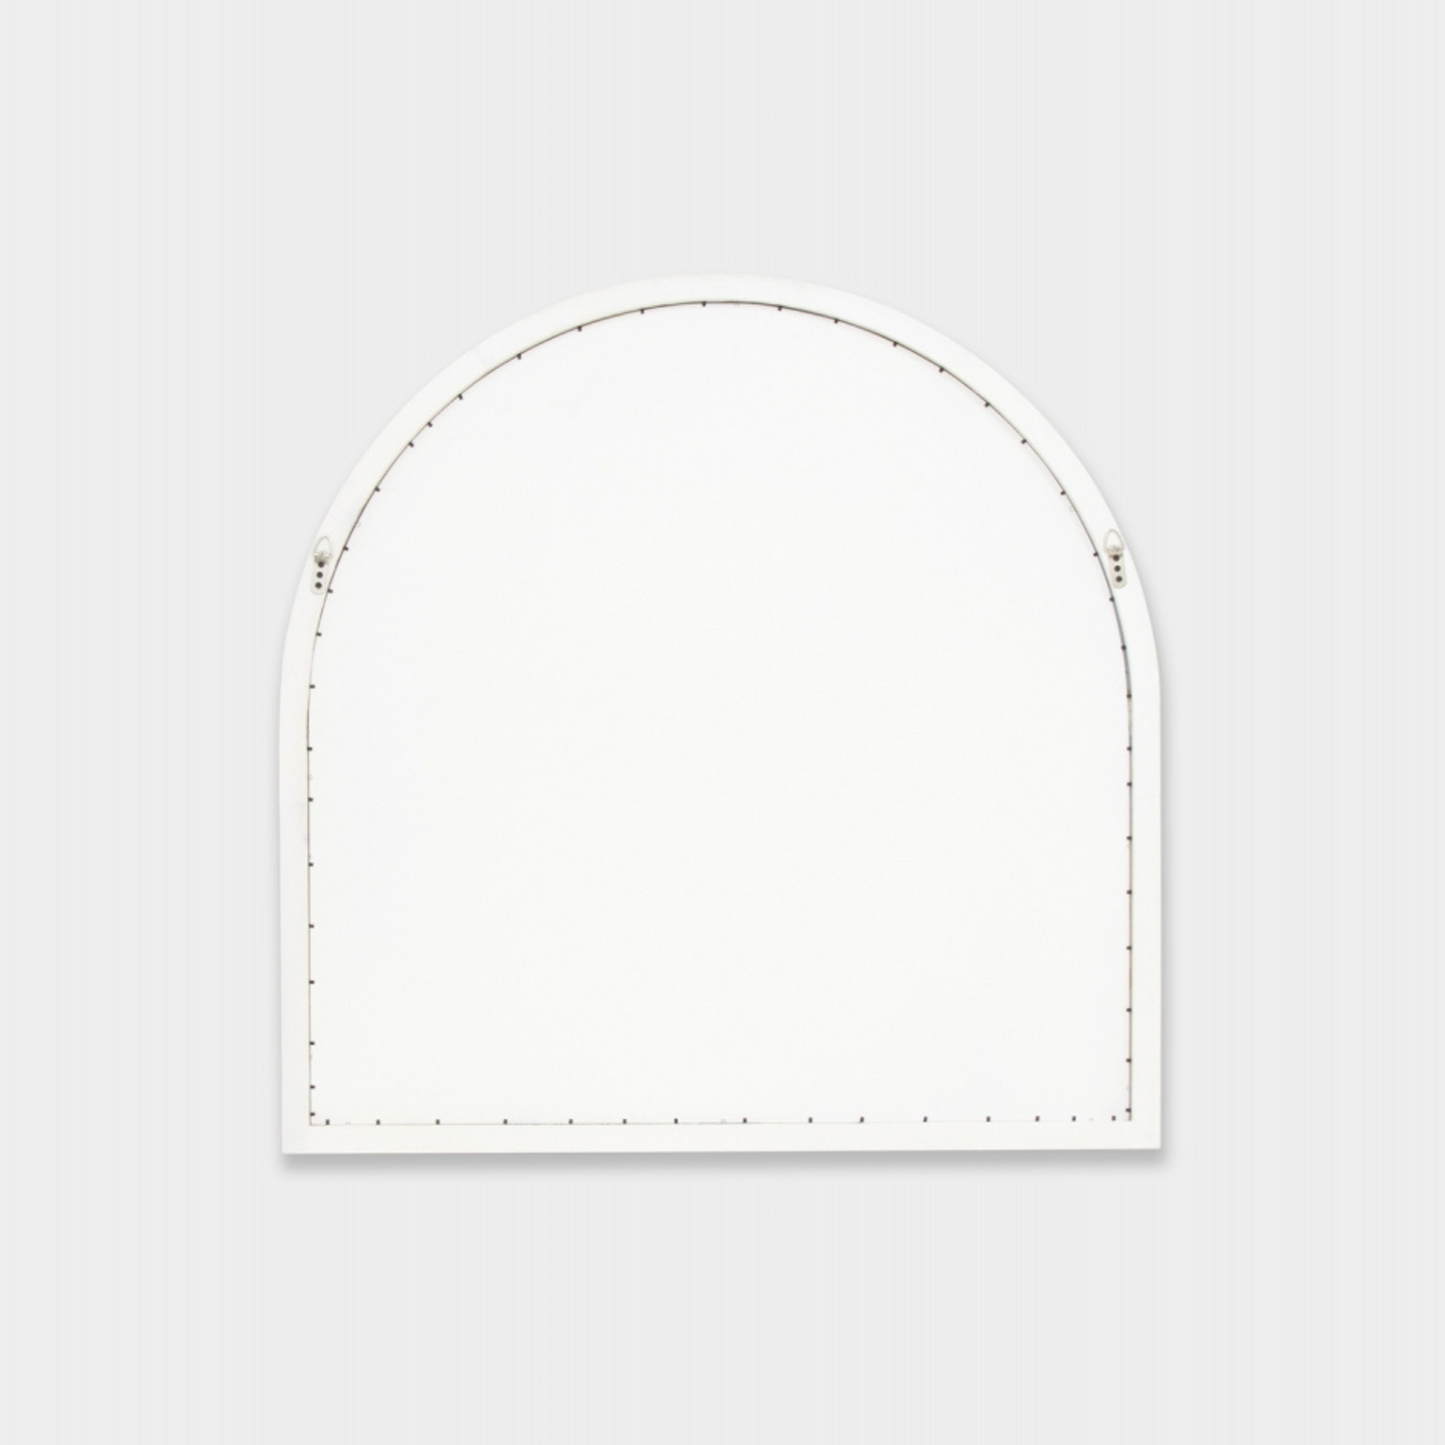 Cove Arch Mirror - White